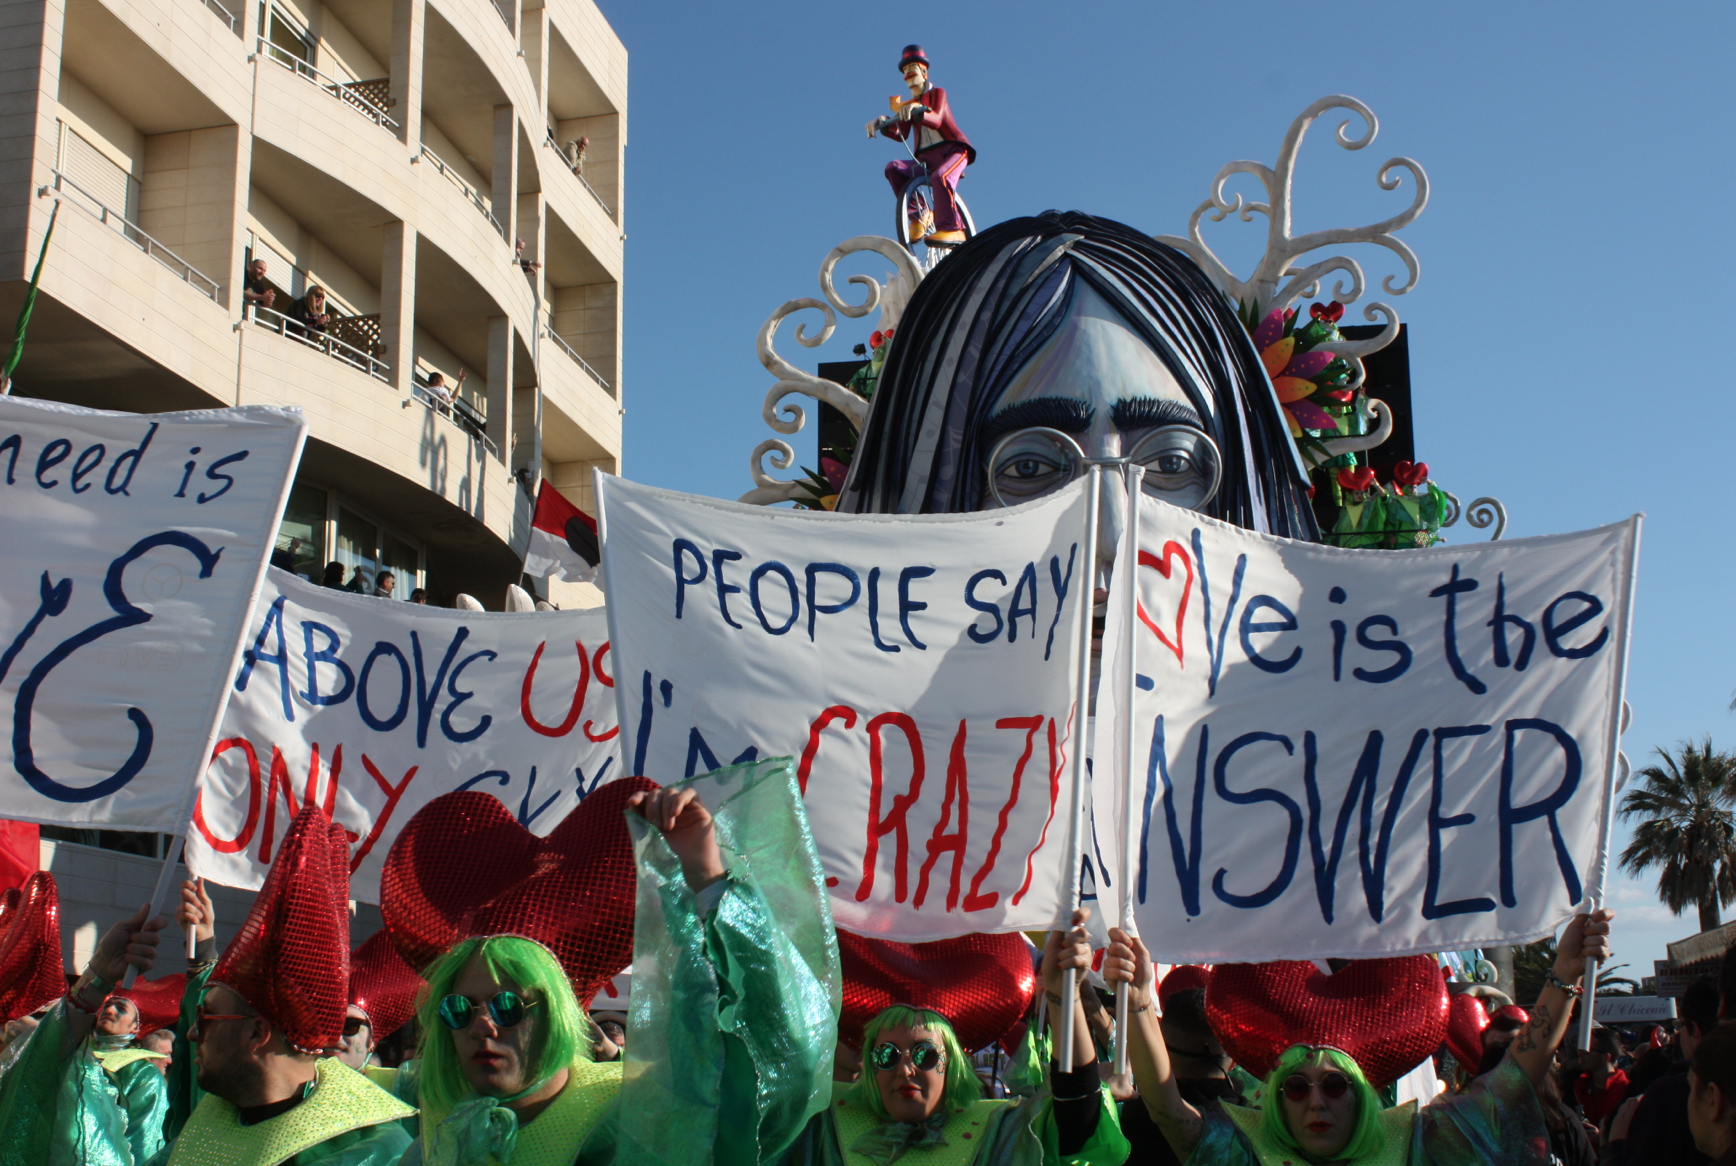 Ecco i giurati del terzo corso mascherato di Carnevale, c’è il giallista Giampaolo Simi